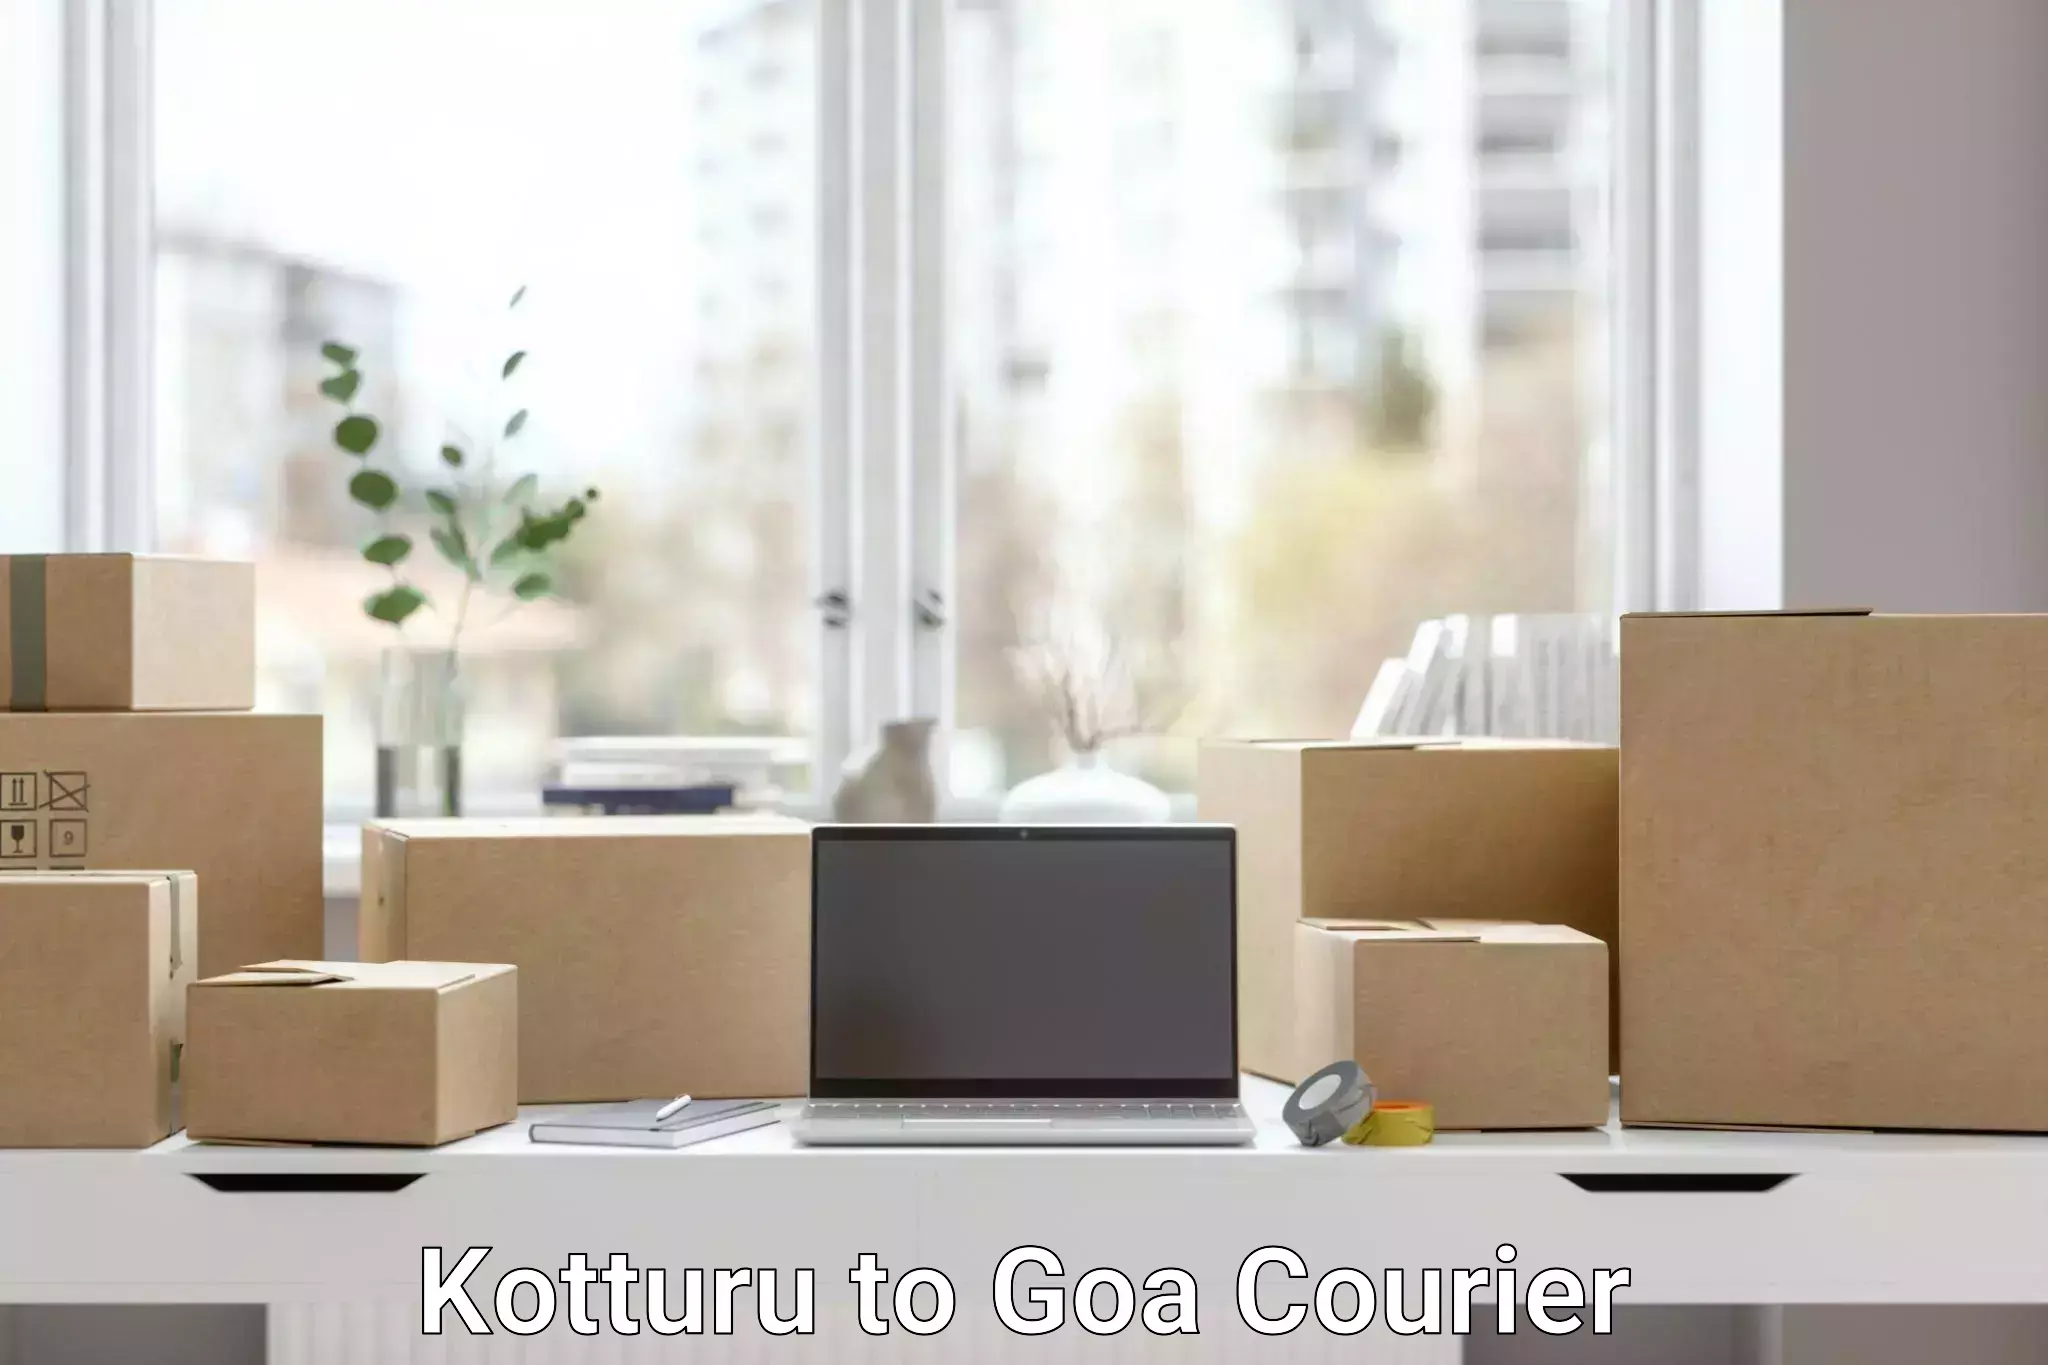 Optimized shipping routes Kotturu to NIT Goa